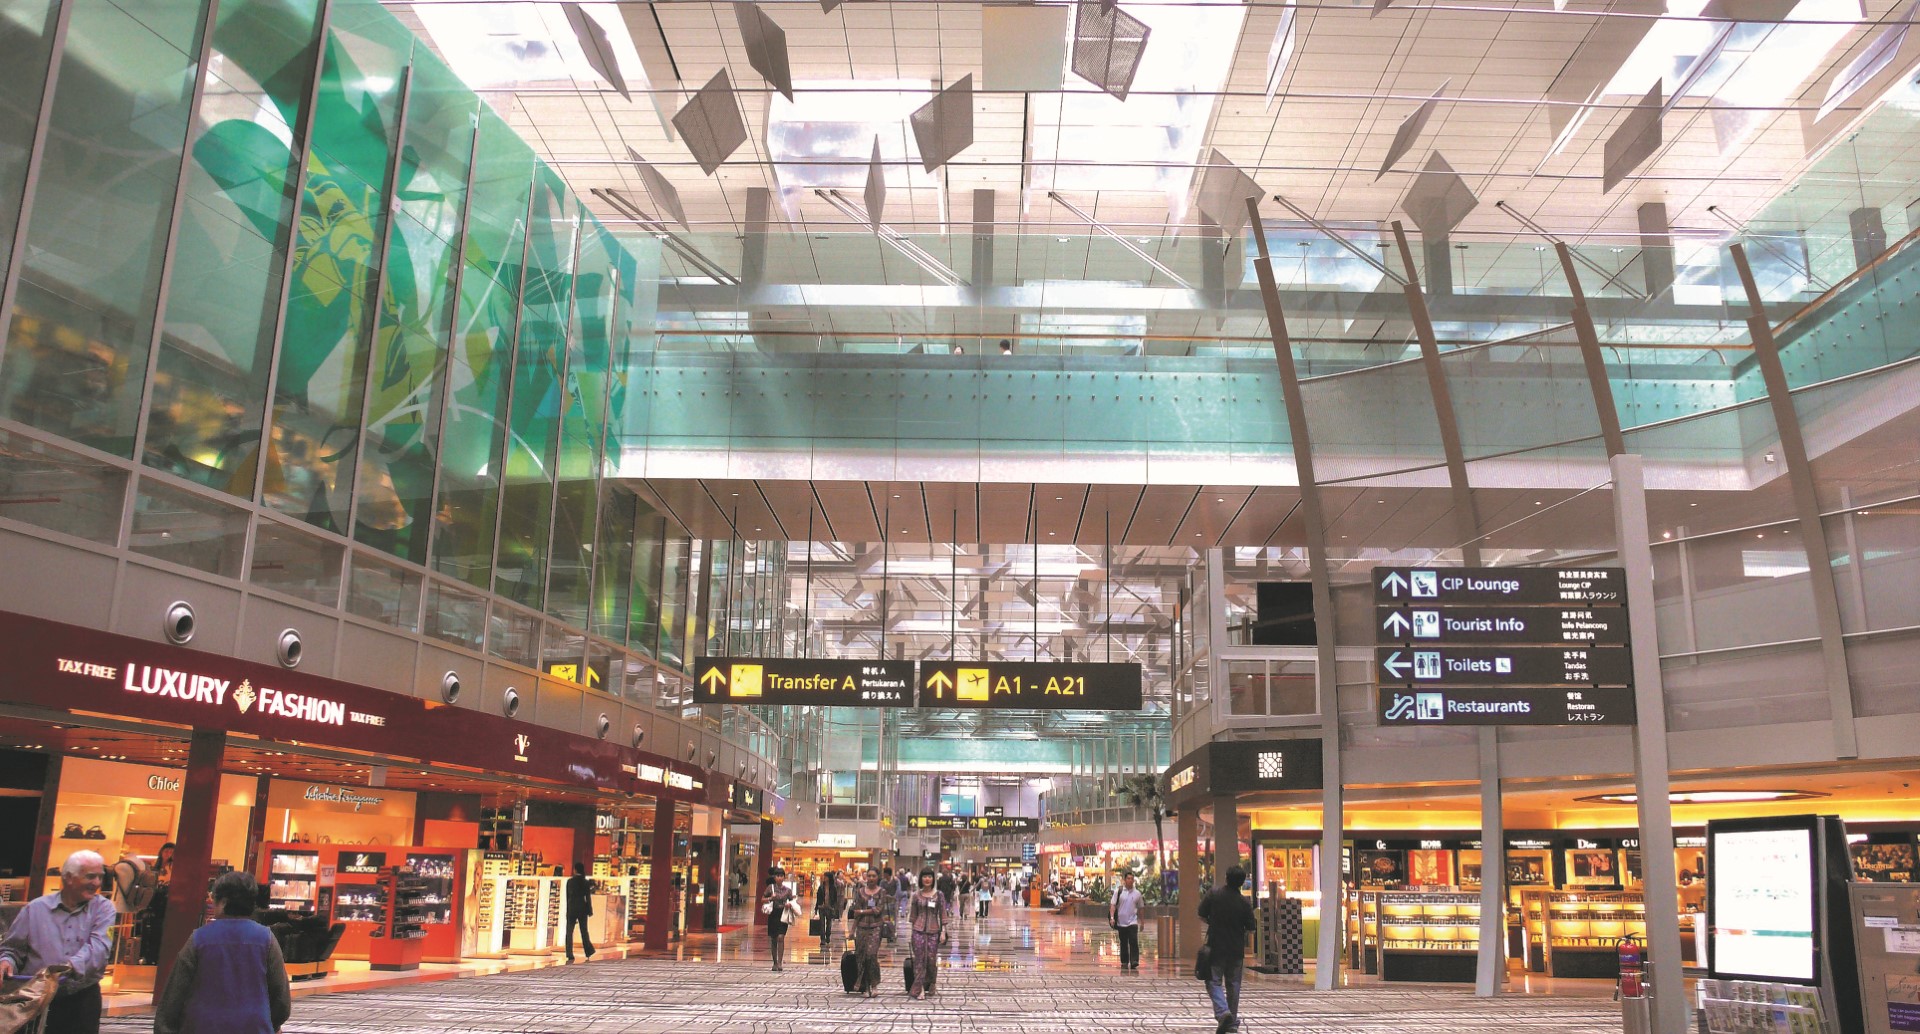 Shopping street at Departure Transit Mall, Changi Airport Terminal 3, Singapore